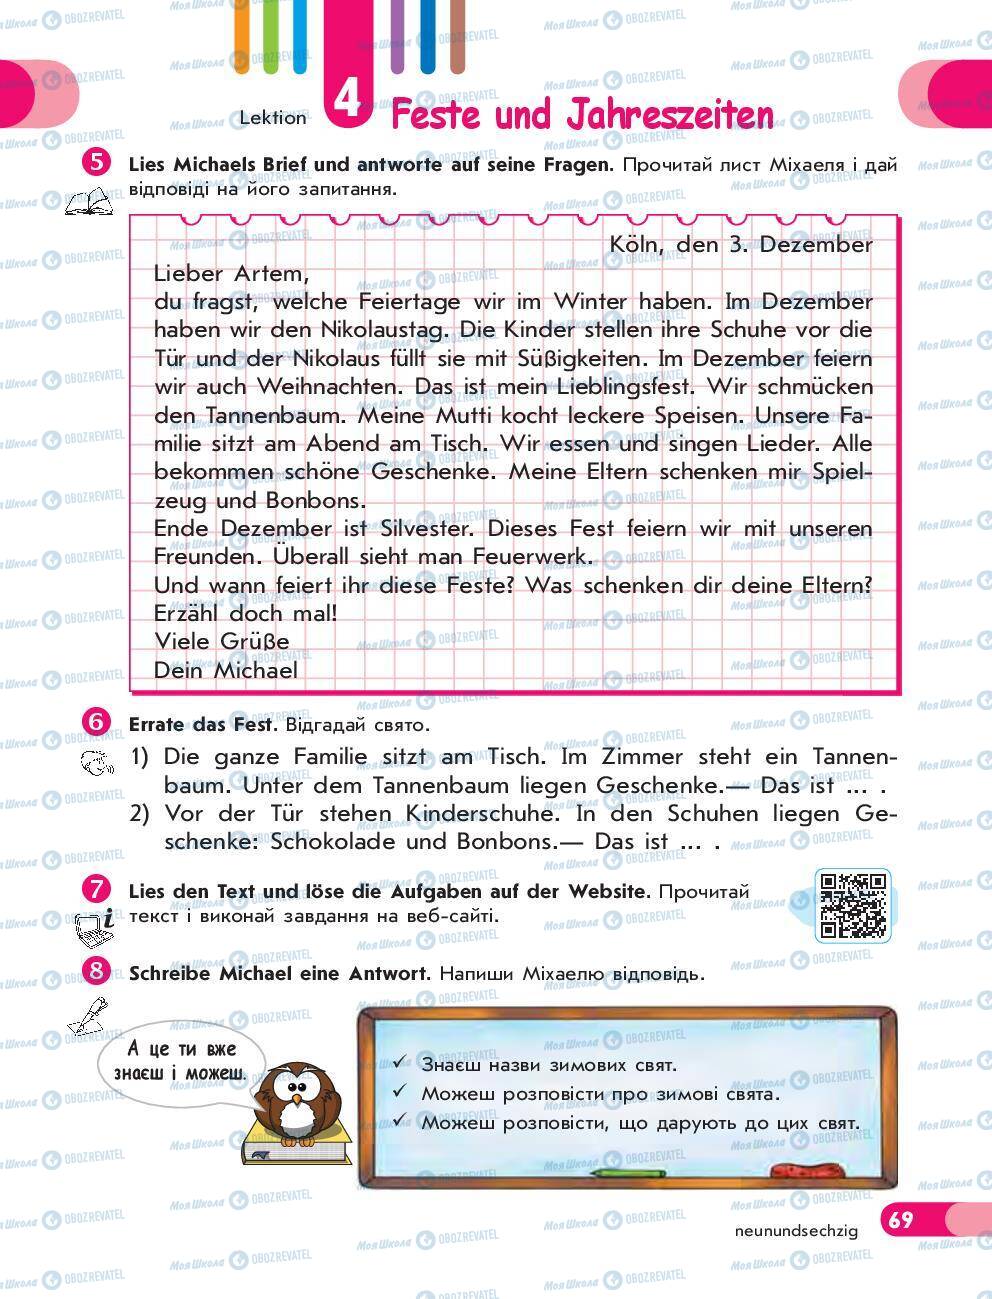 Підручники Німецька мова 5 клас сторінка 69